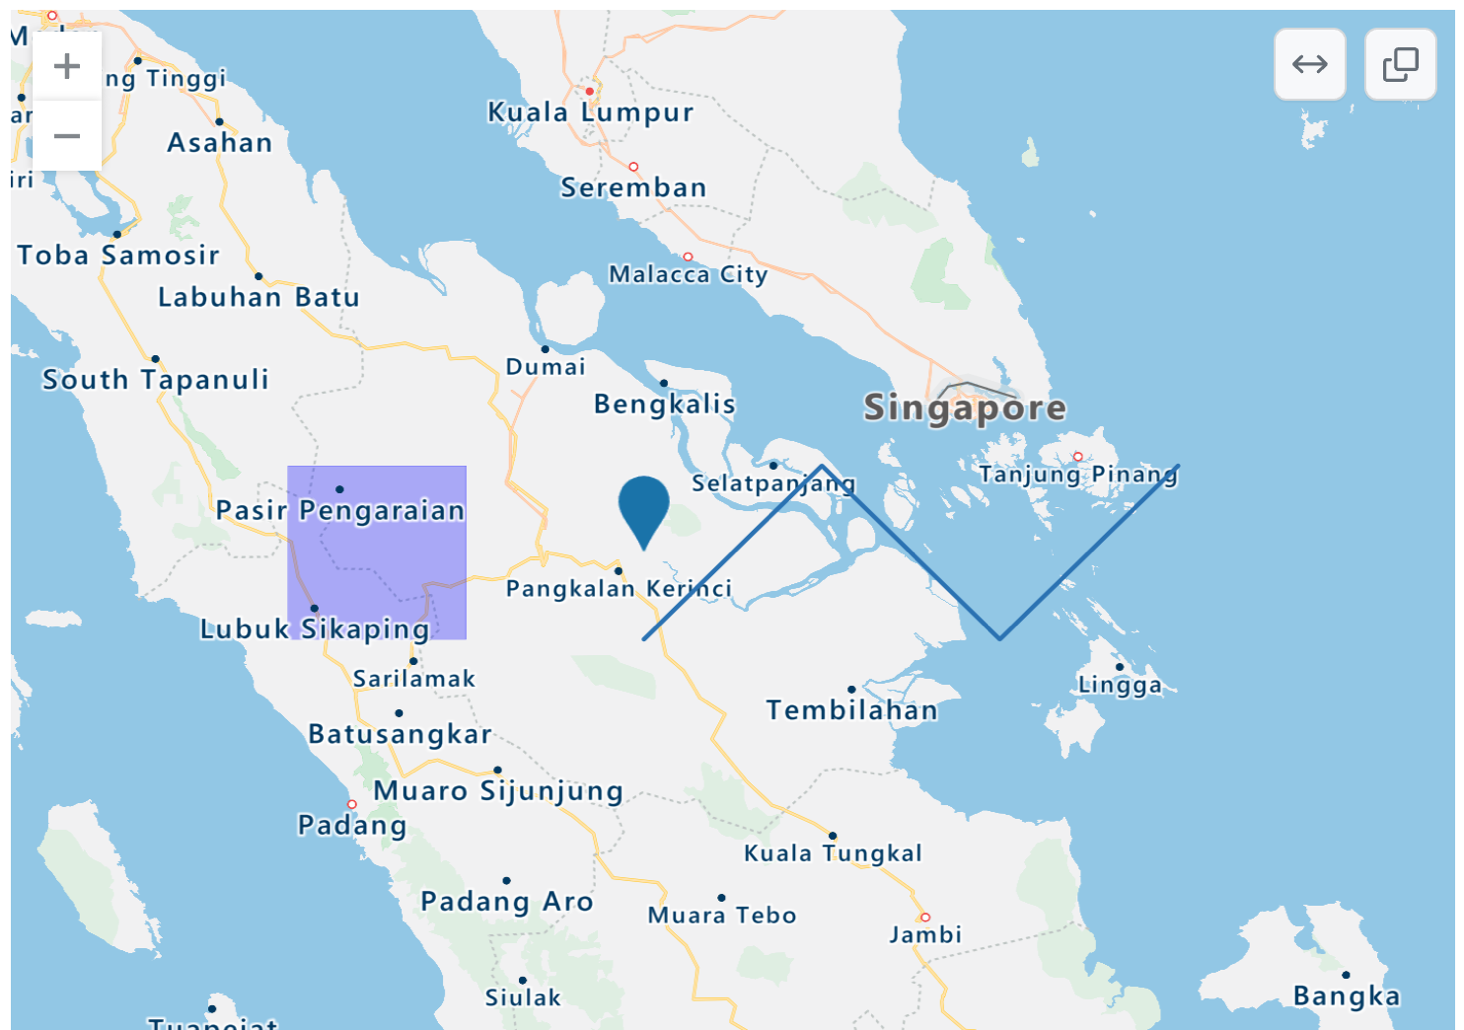 Снимок экрана: отображенная карта TopoJSON частей Индонезии, Сингапура и Малайзии с синей точкой, фиолетовым прямоугольным наложением и синим зигзагом.